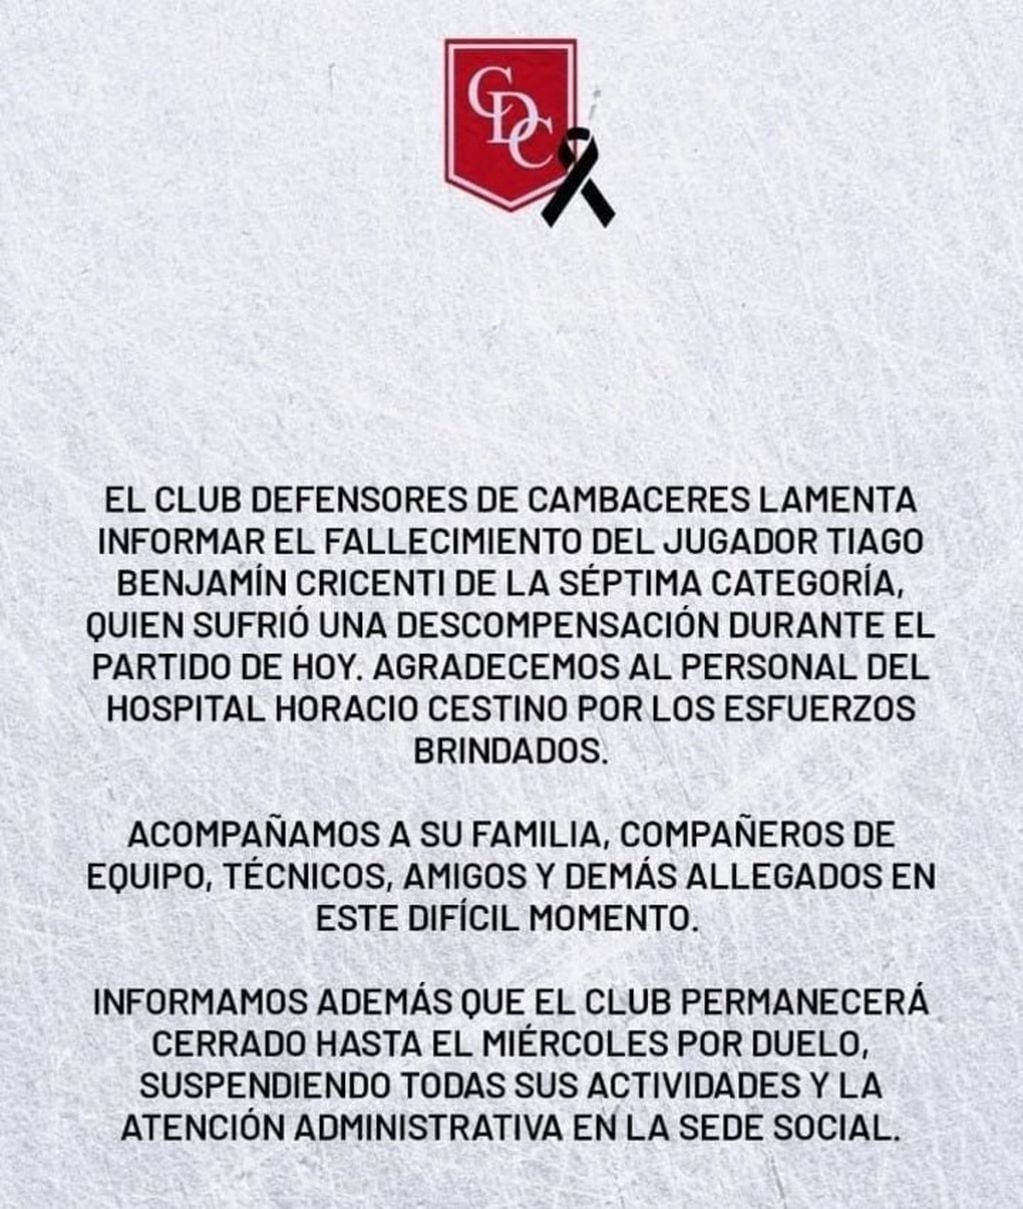 El comunicado del club Deportivo Cambaceres. Gentileza: Clarín.